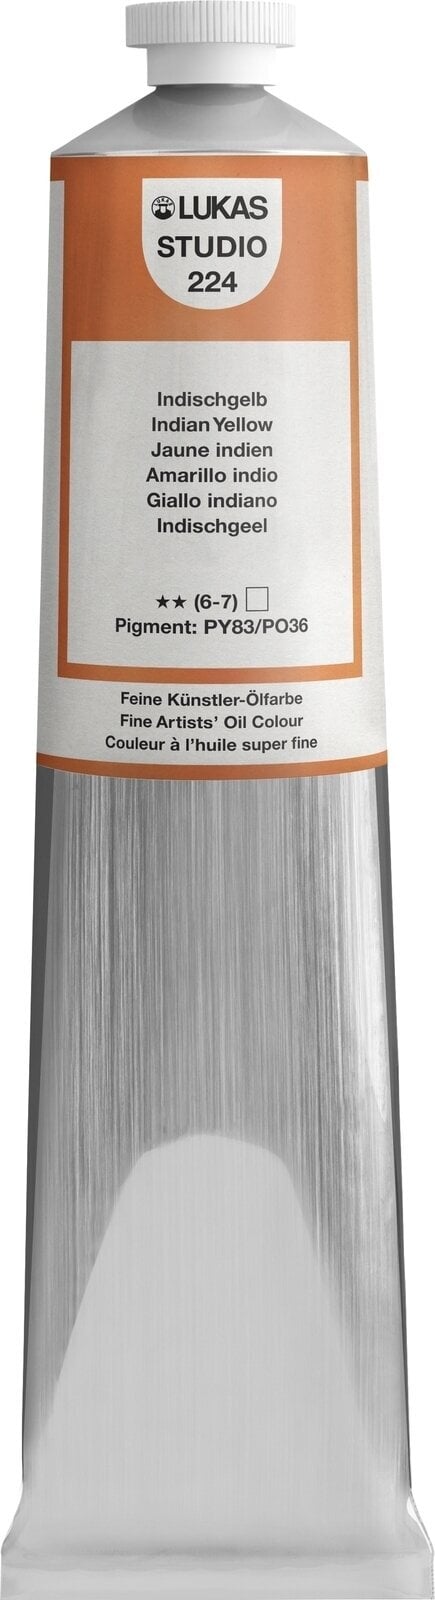 Ölfarbe Lukas Studio Oil Paint Aluminium Tube Ölgemälde Indian Yellow 200 ml 1 Stck